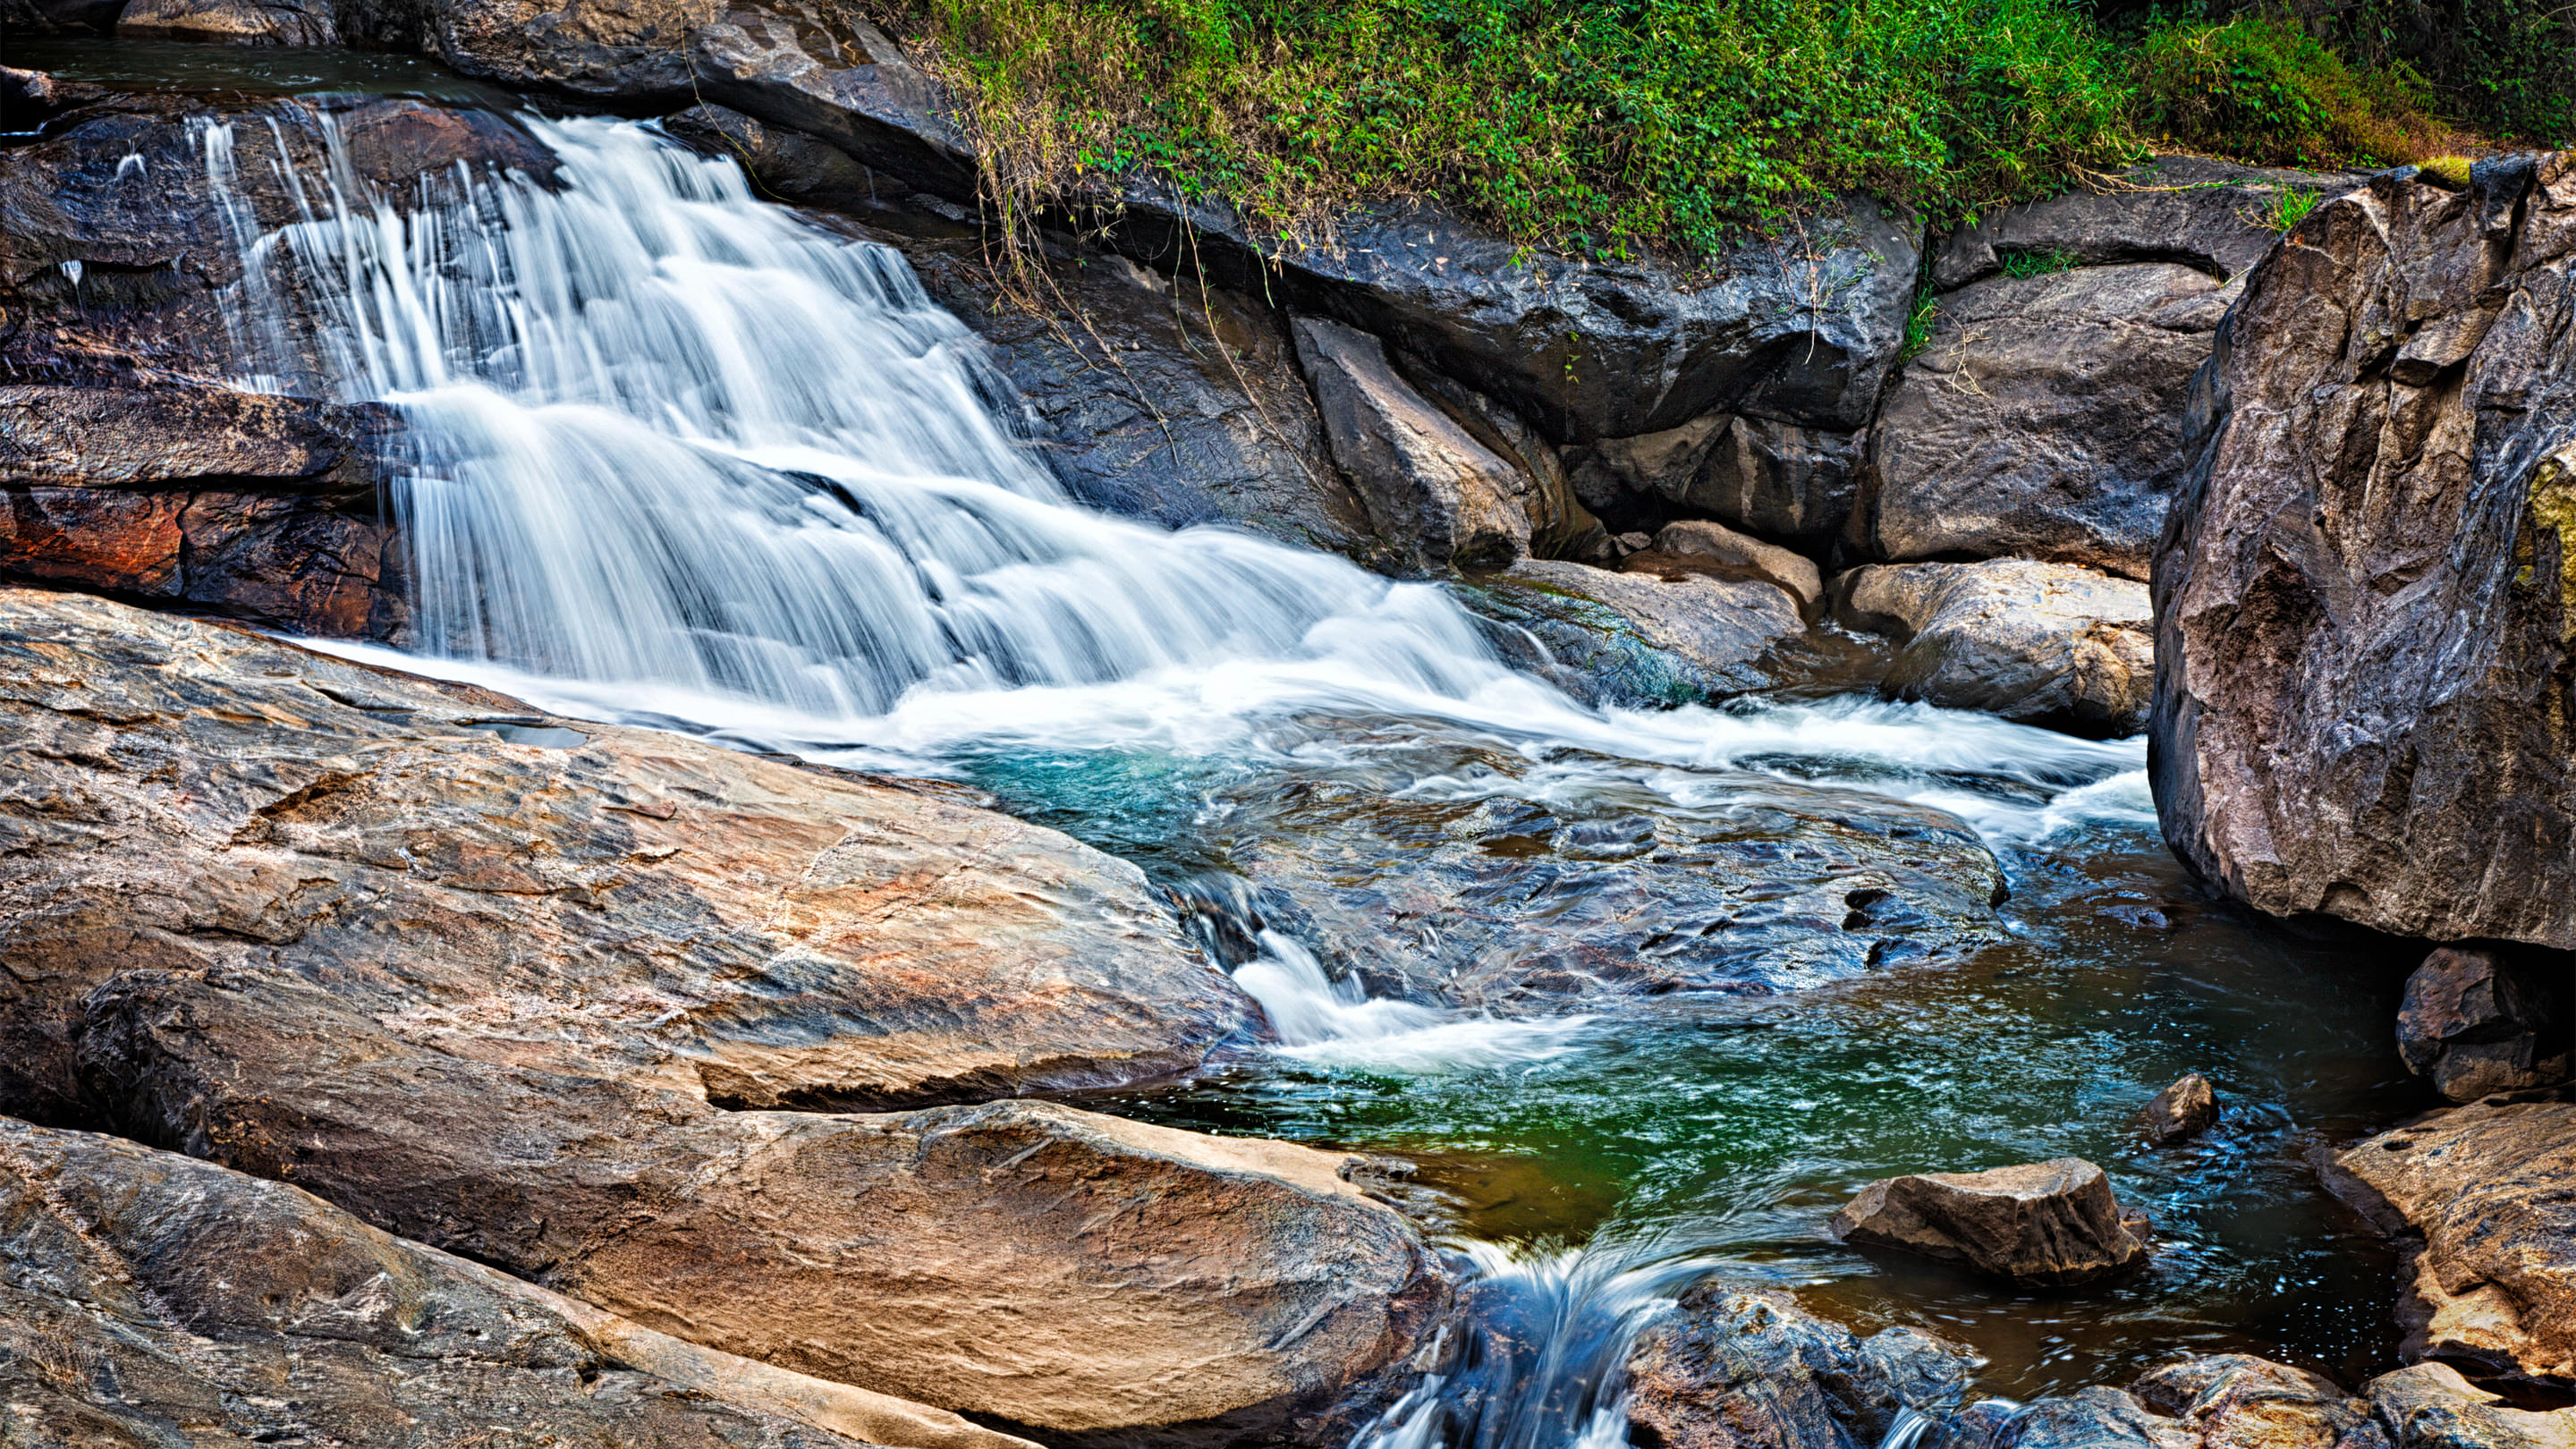 Chinnakanal Waterfalls Overview